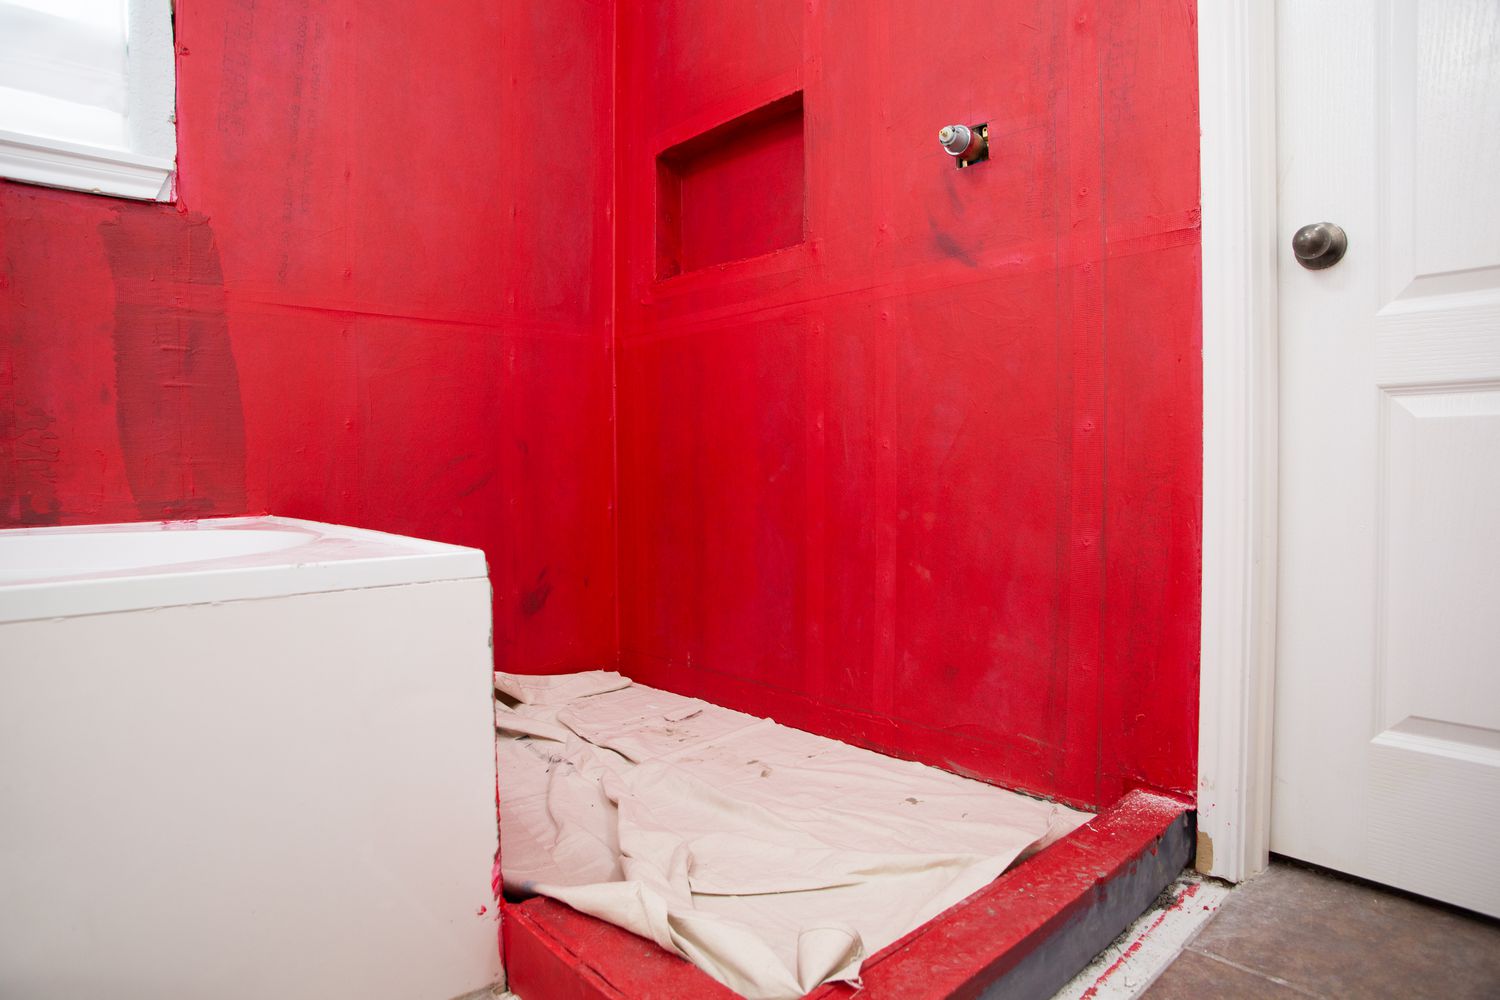 Mit weißem Stoff bedeckte Bodenfläche in einem Badezimmer mit roten Wänden vor der Verlegung von keramischen Wandfliesen